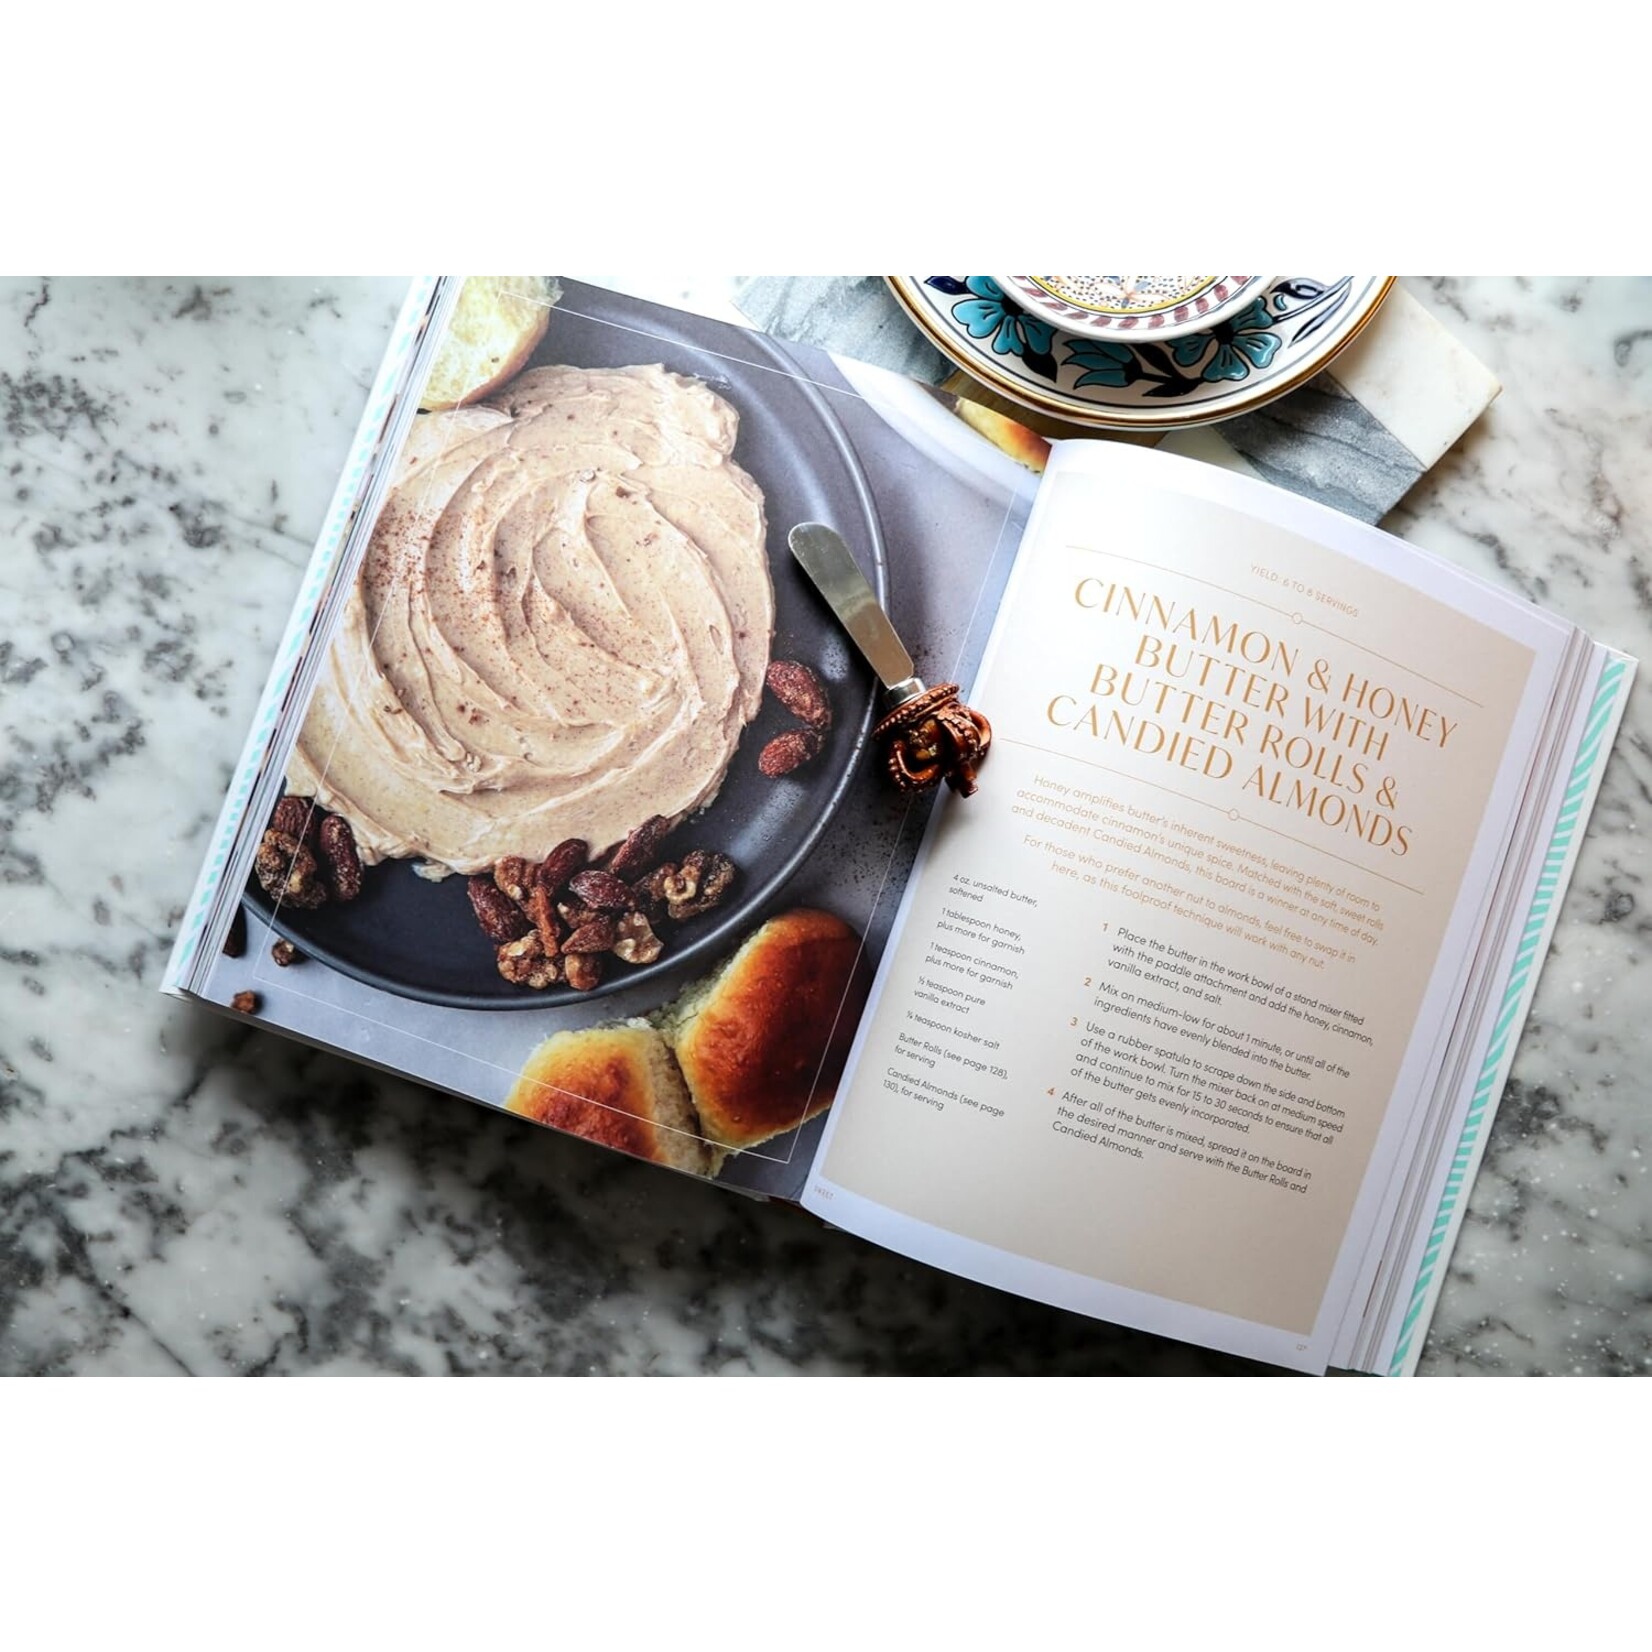 Harper & Collins Publishers Butter Boards Cookbook